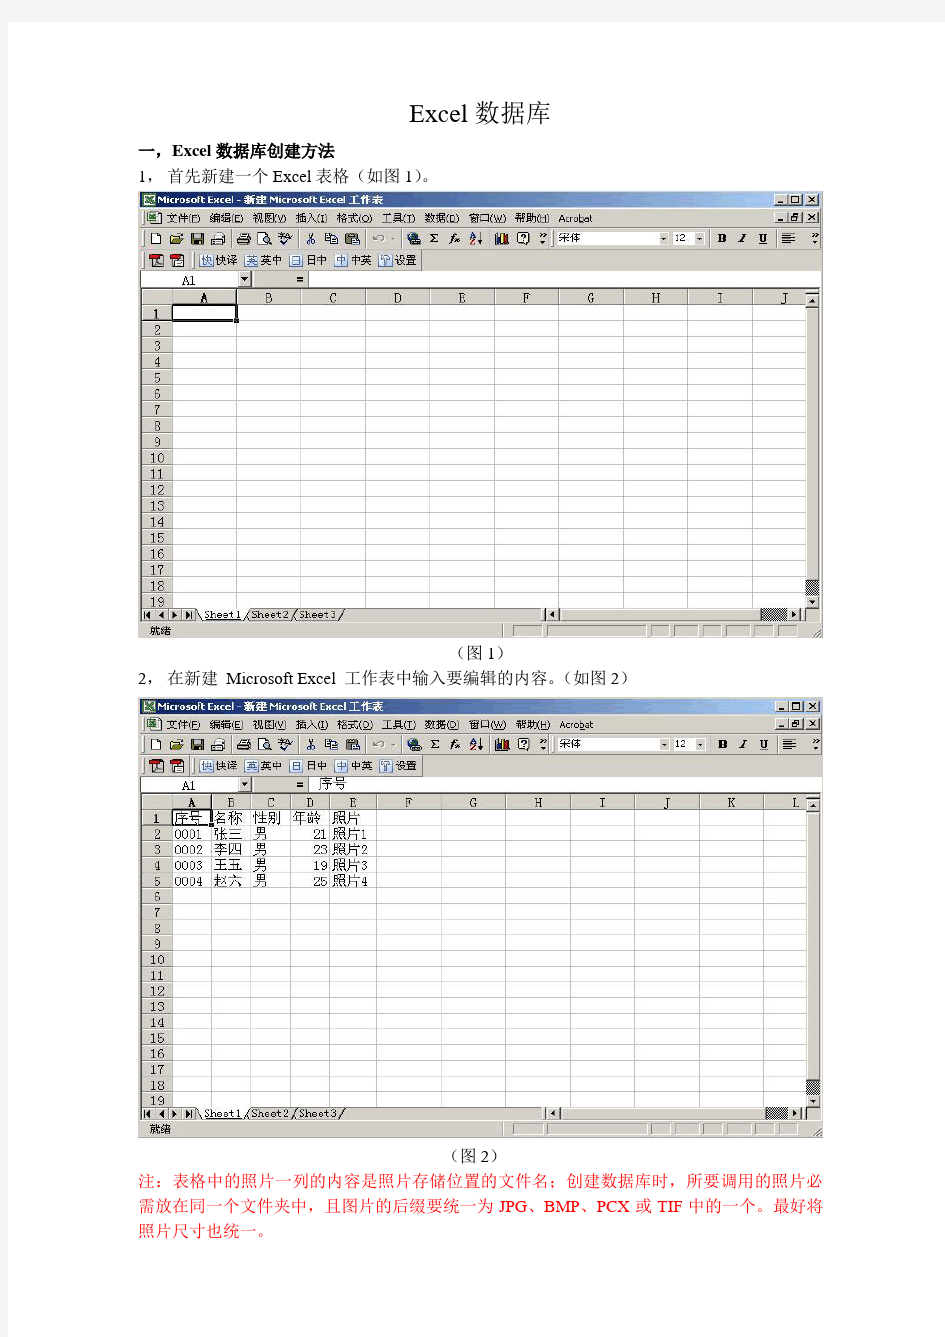 Excel数据库创建和调用